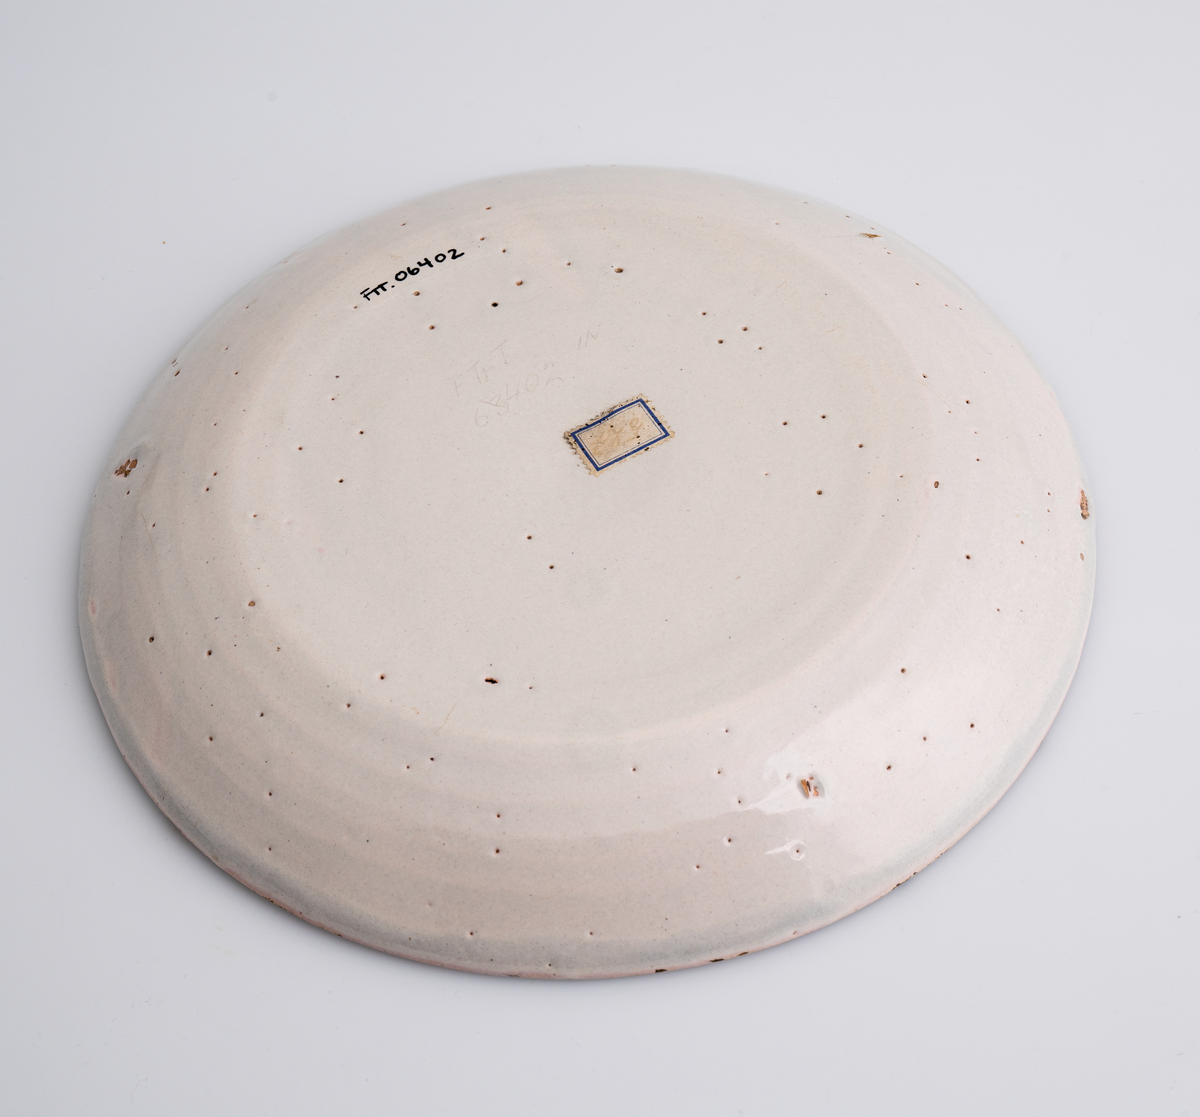 En flat tallerken av keramikk/porselen. Den har bly- og tinnglasur og er hvit på farge. Tallerkenen er rund med en relativt høy og skrånende kant. Den har ikke dekor utover glasuren. Tallerkenen er en av 11 identiske tallerkener som trolig er fra tidlig på 1700-tallet.